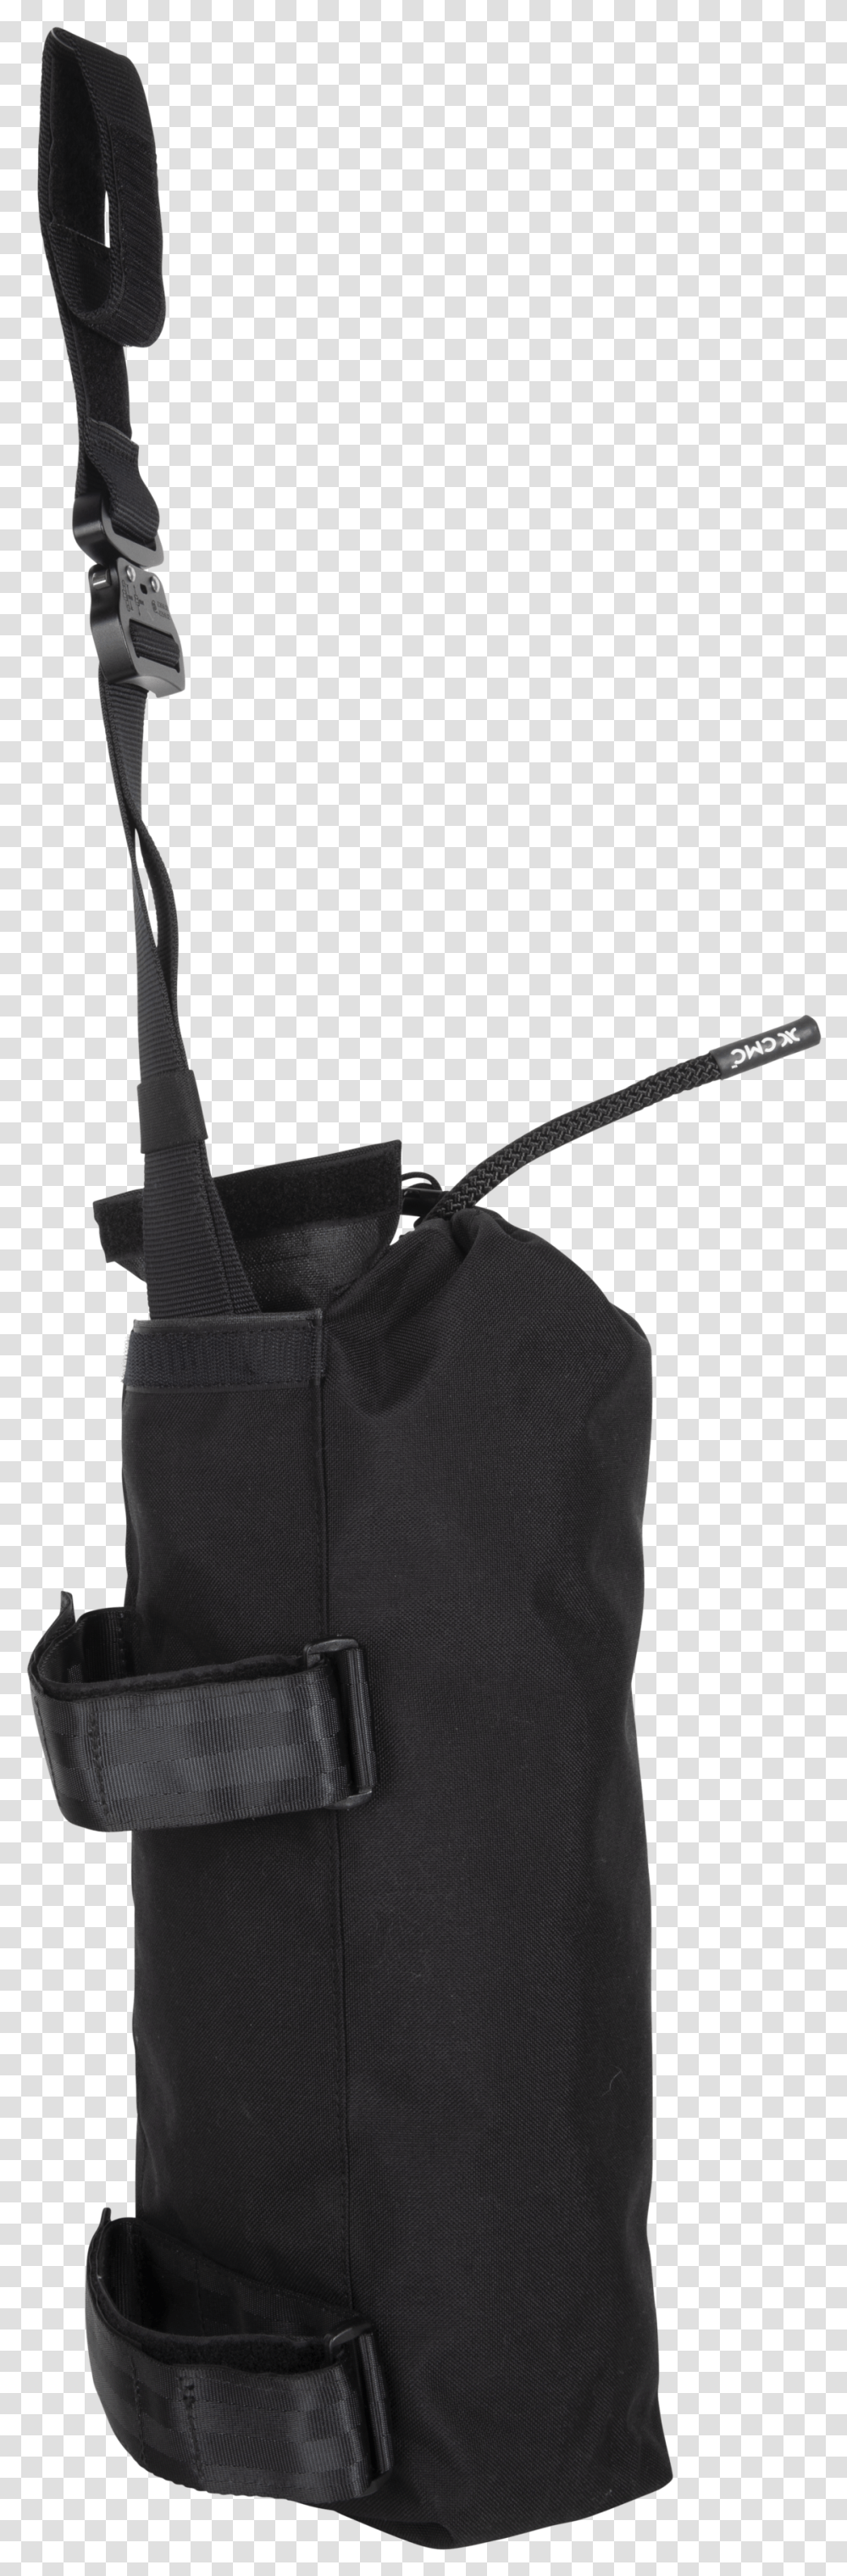 Grappling Hook Bag, Electronics, Backpack, Luggage Transparent Png